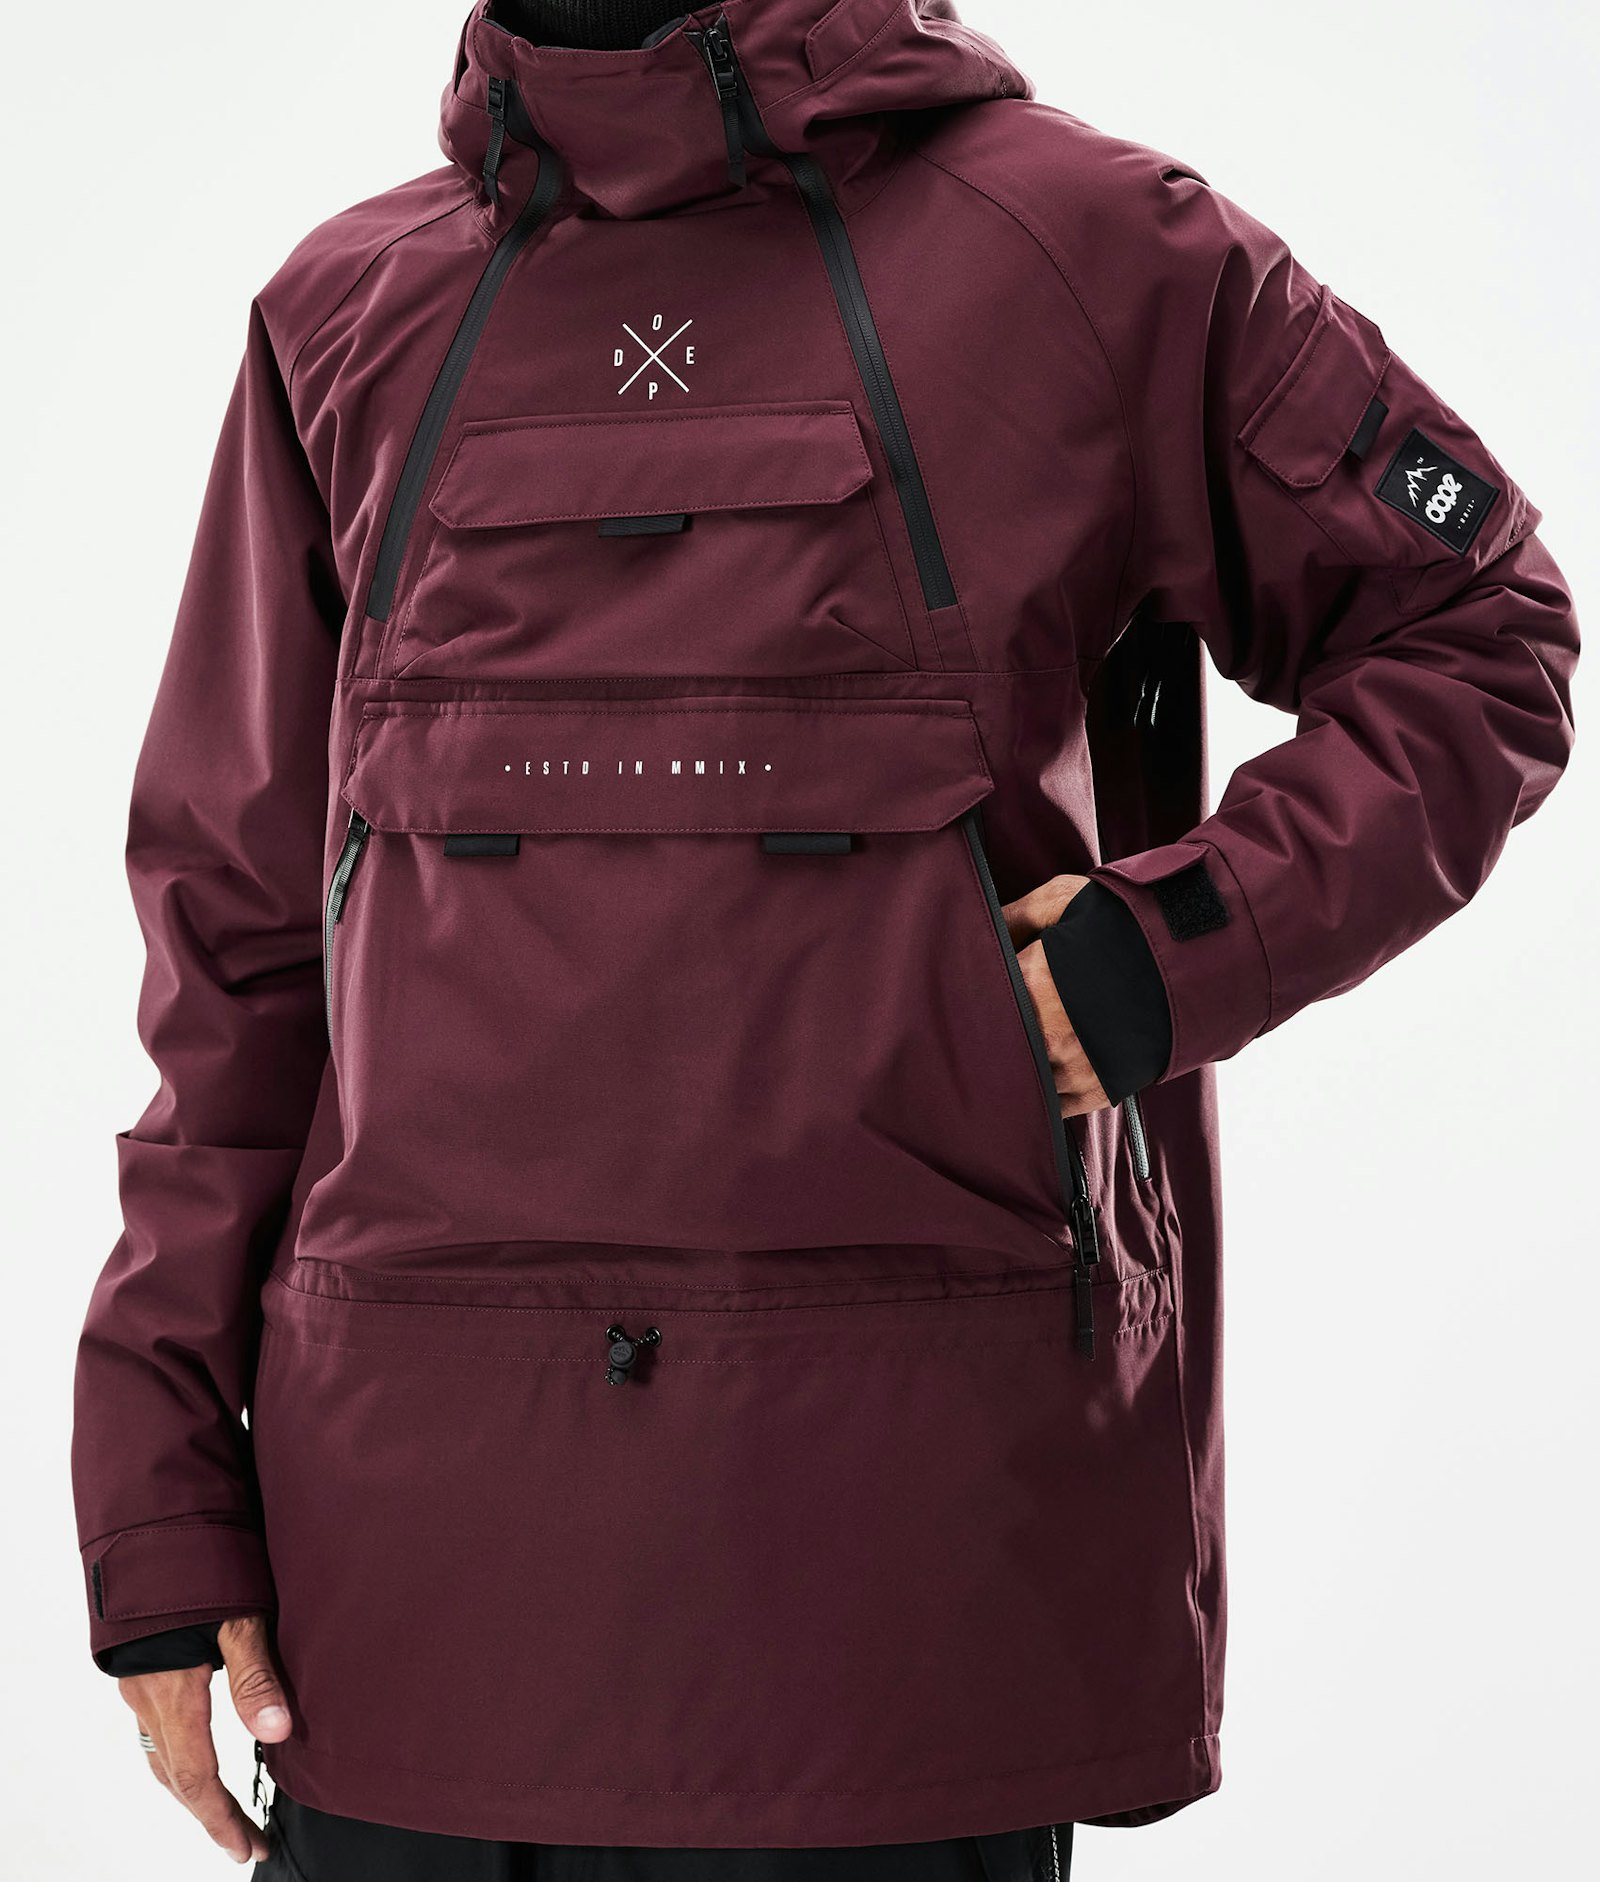 Akin 2021 Ski Jacket Men Burgundy